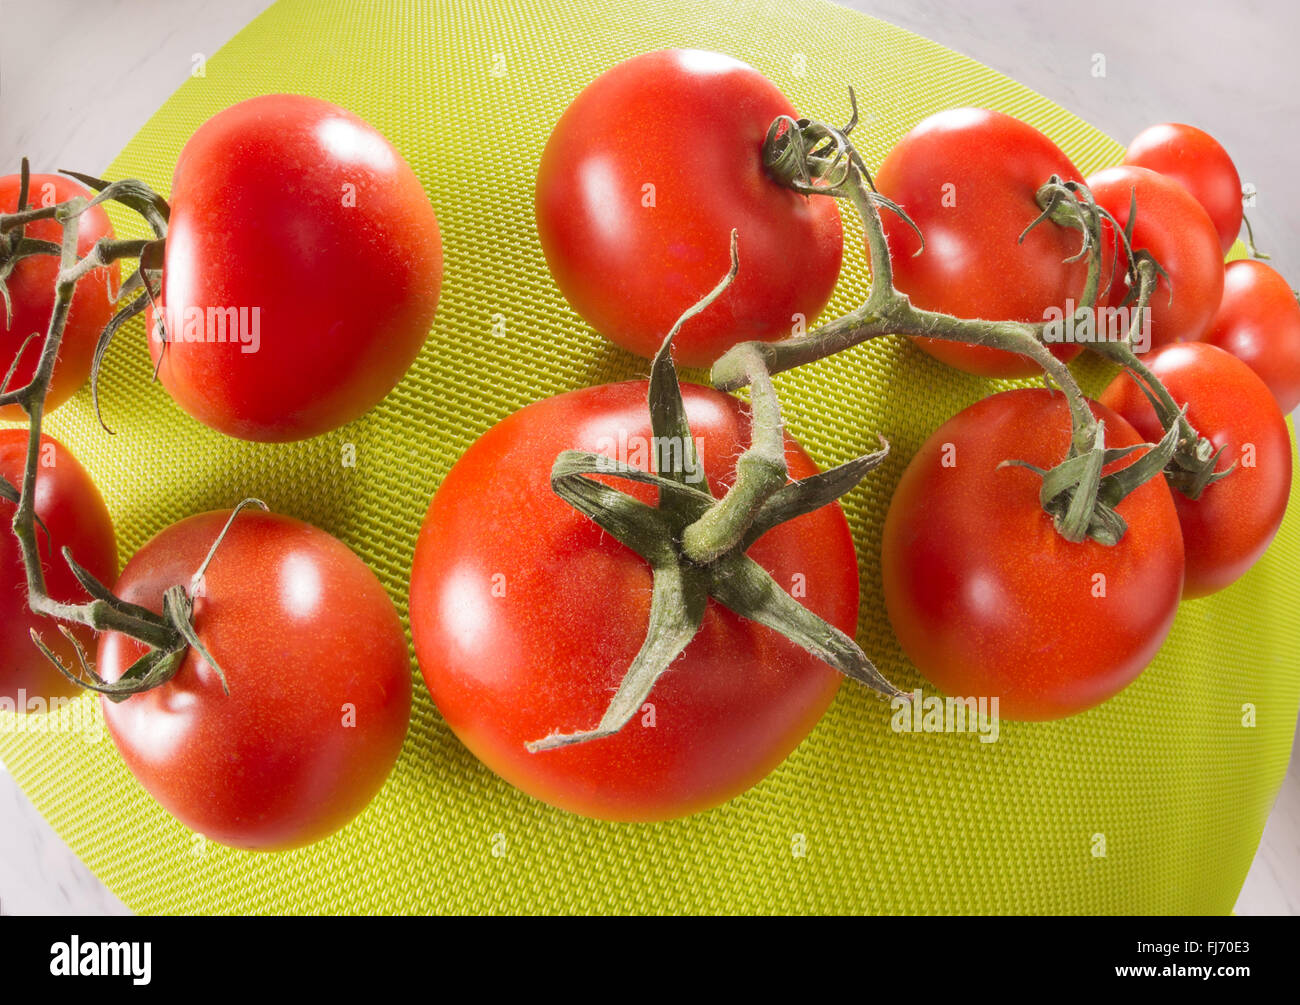 Pomodori su uno sfondo verde, obiettivo fisheye, ampio angolo di distorsione della lente lontano, enorme rosso rotondo verde, lucida, fresco con steli, BU Foto Stock